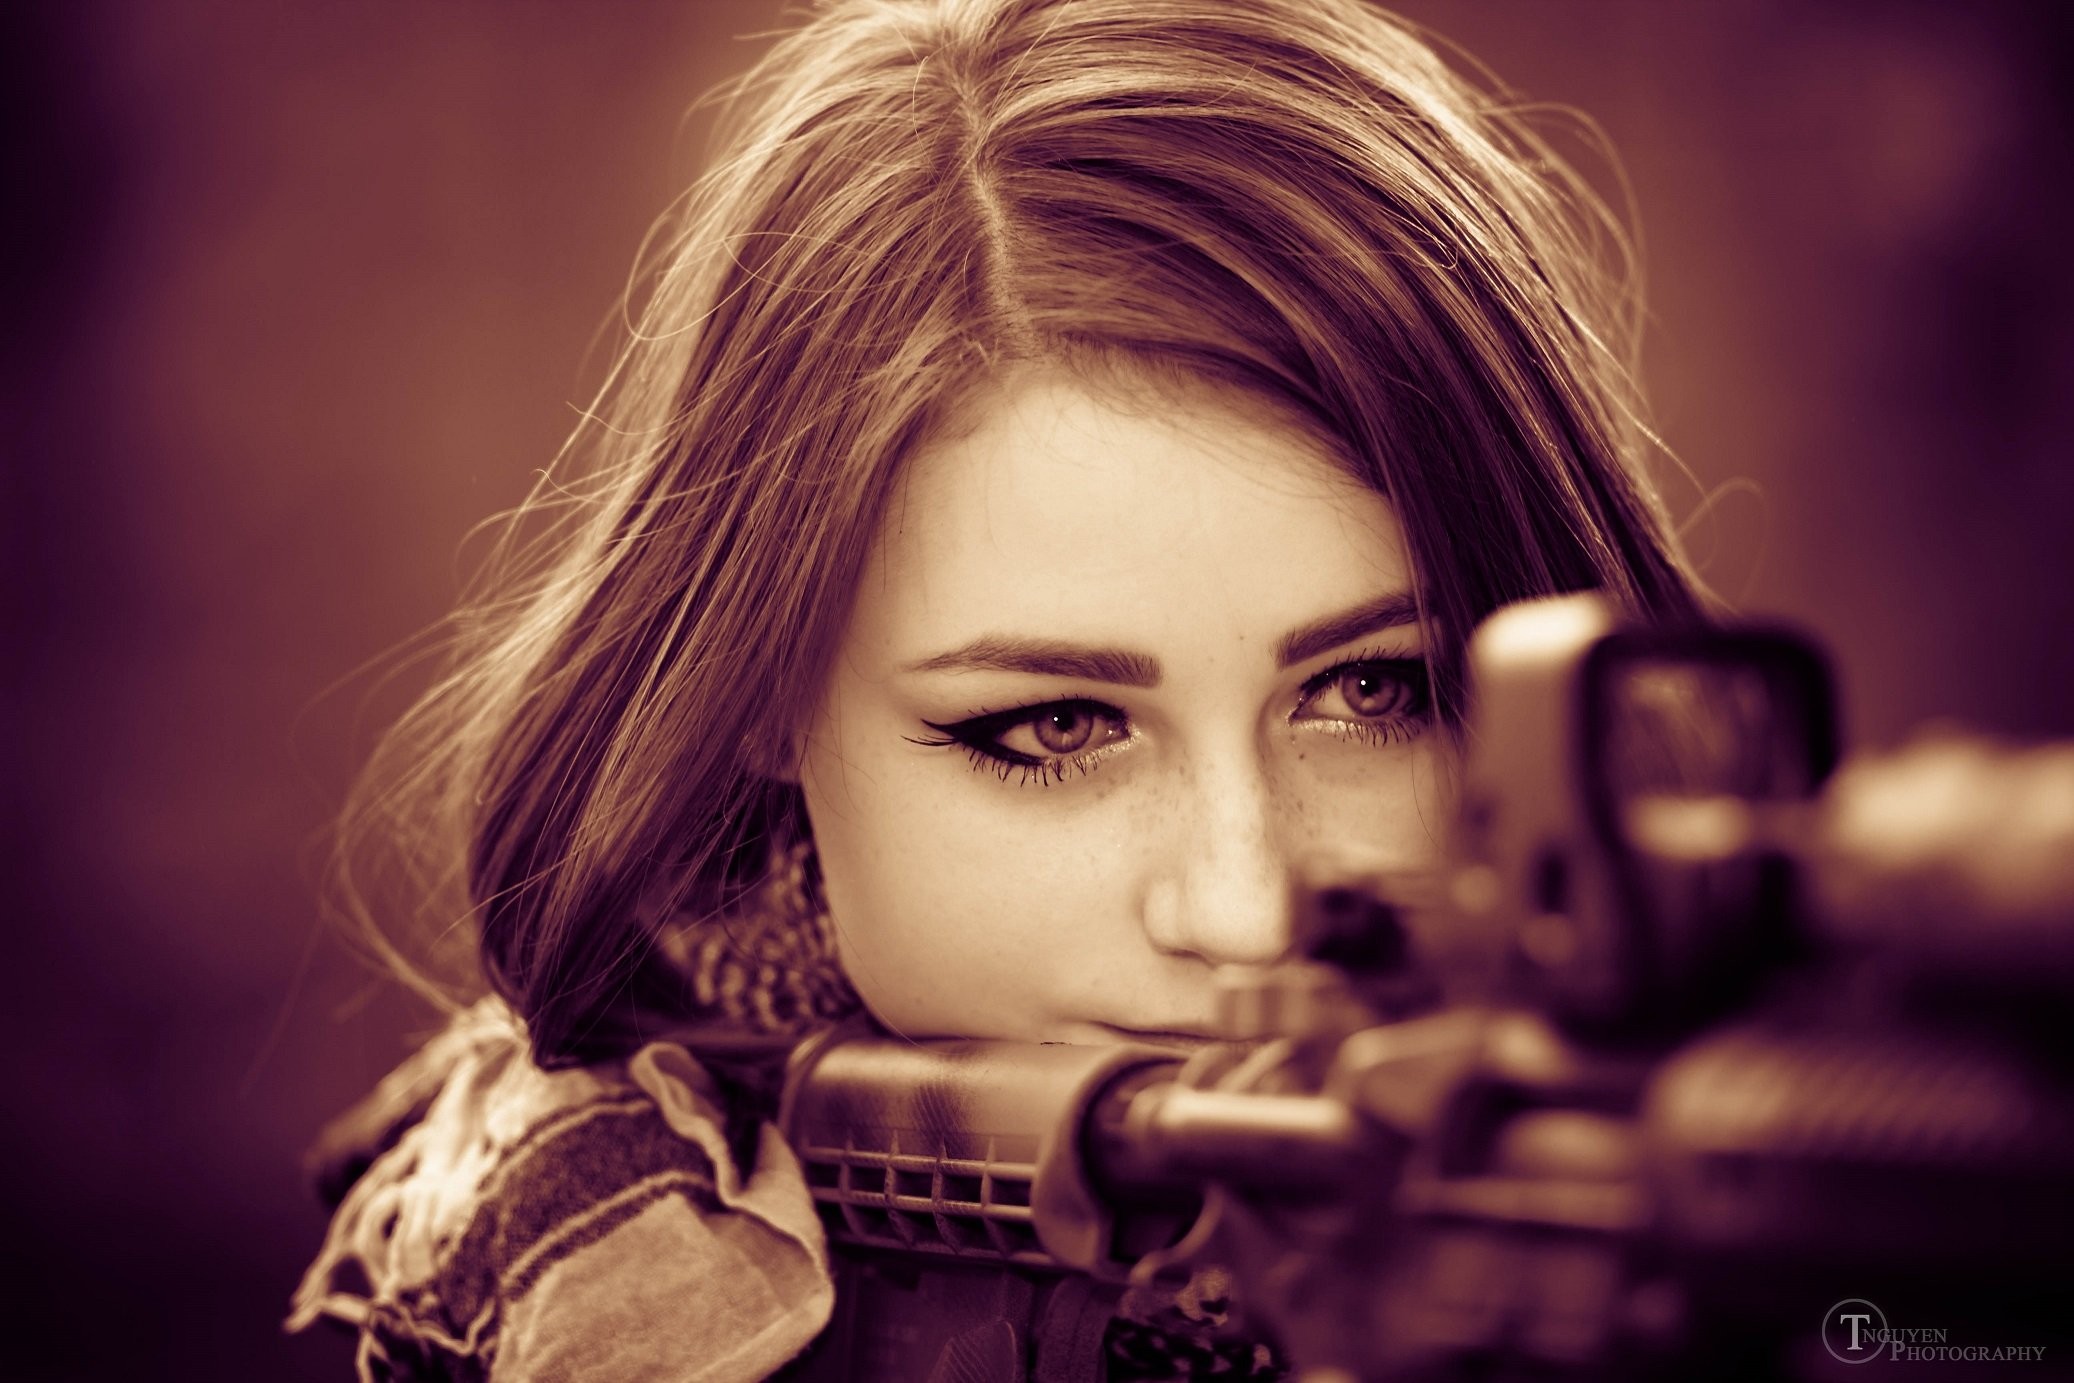 Sniper Girls Wallpaper Hd , HD Wallpaper & Backgrounds